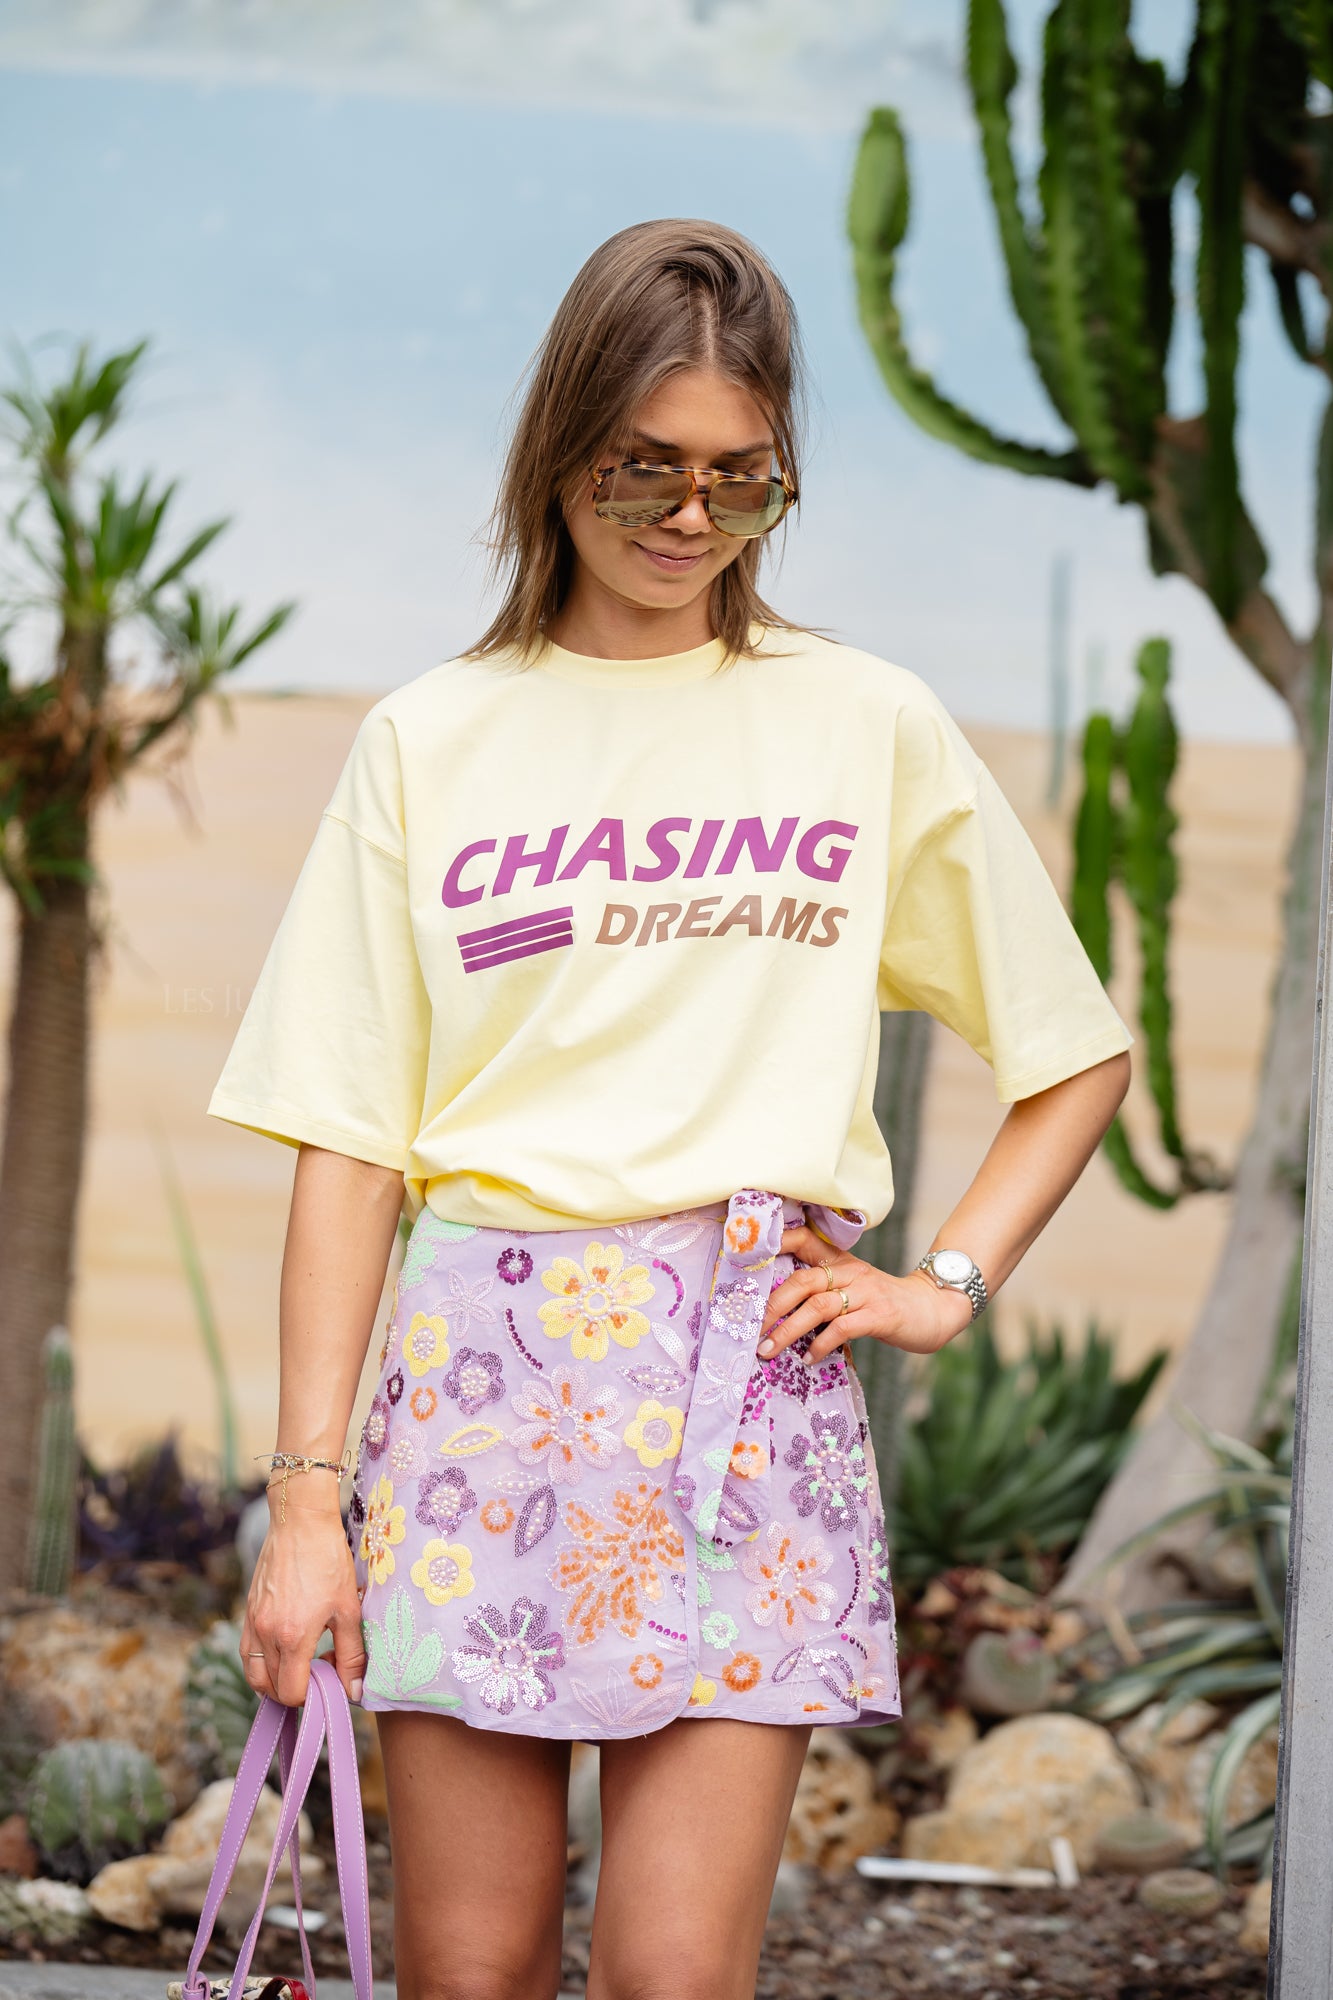 Chasing dreams t-shirt yellow